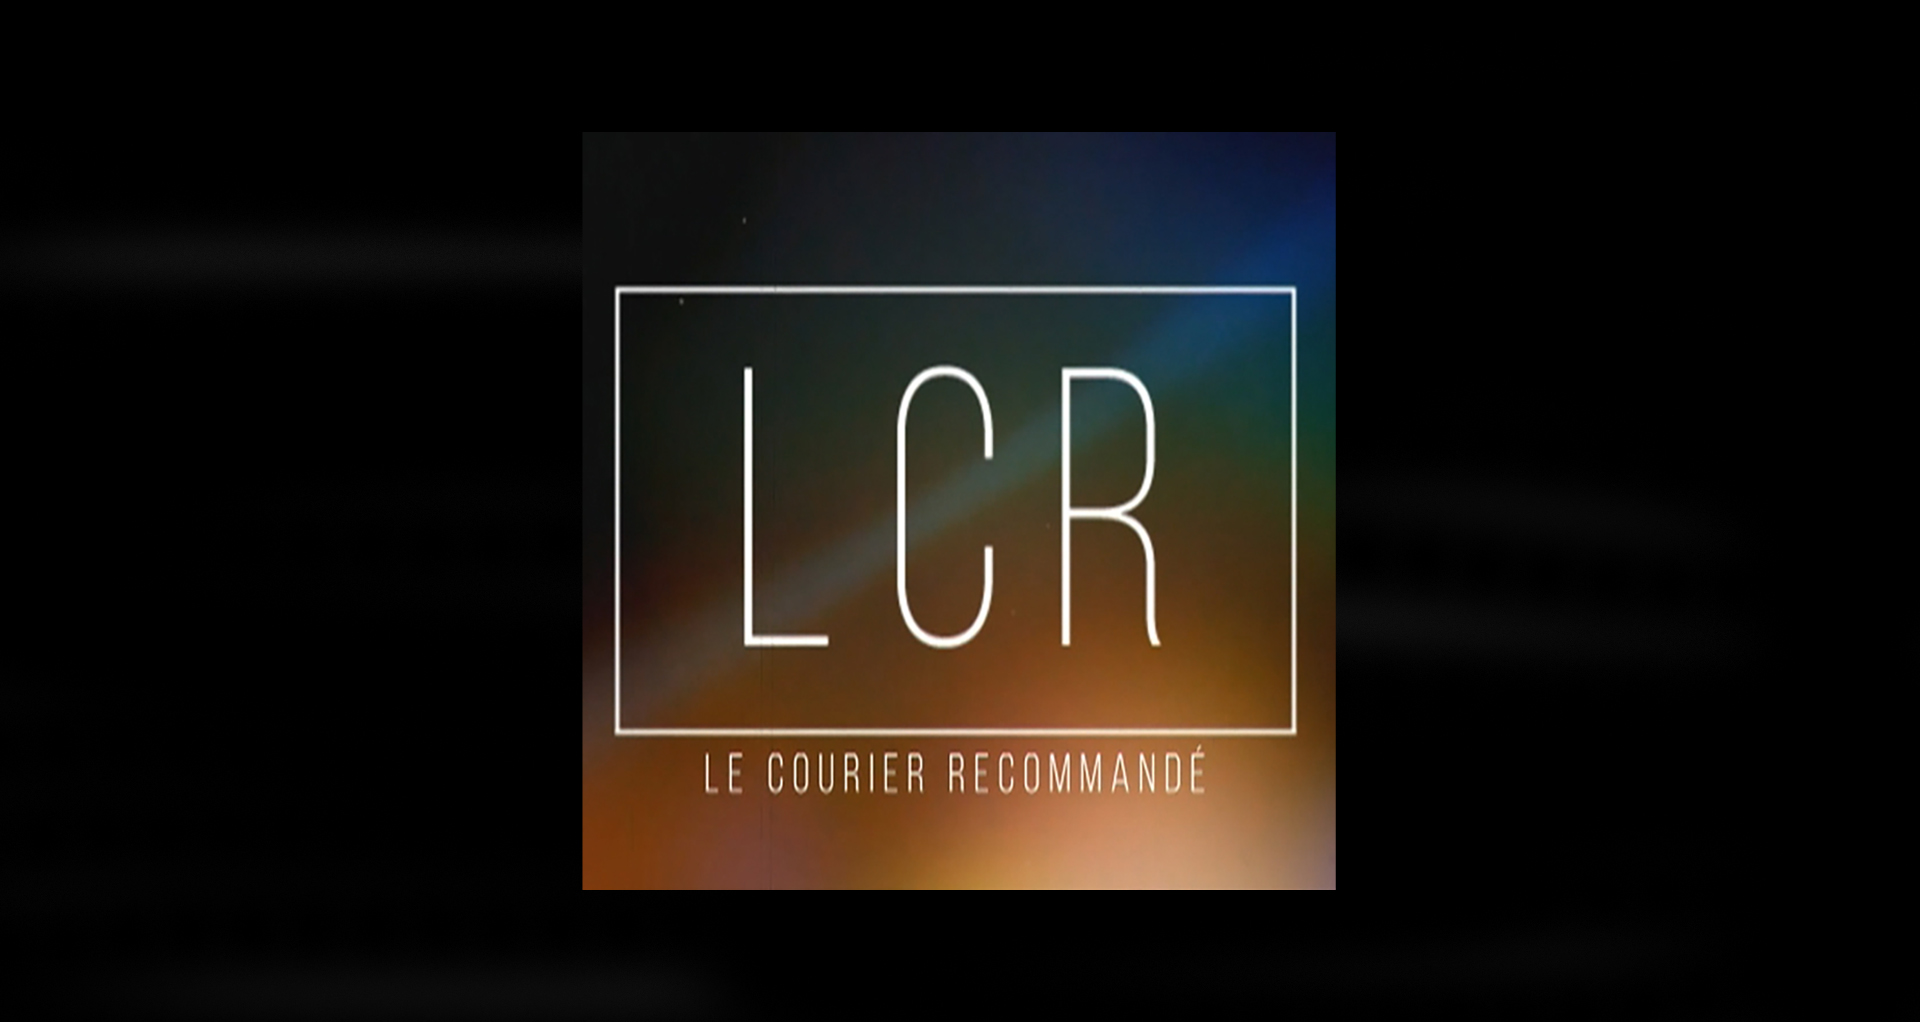 LCR - Bouli Lanners et José Bové pour le film "Une affaire de principe" d’Antoine Raimbault.